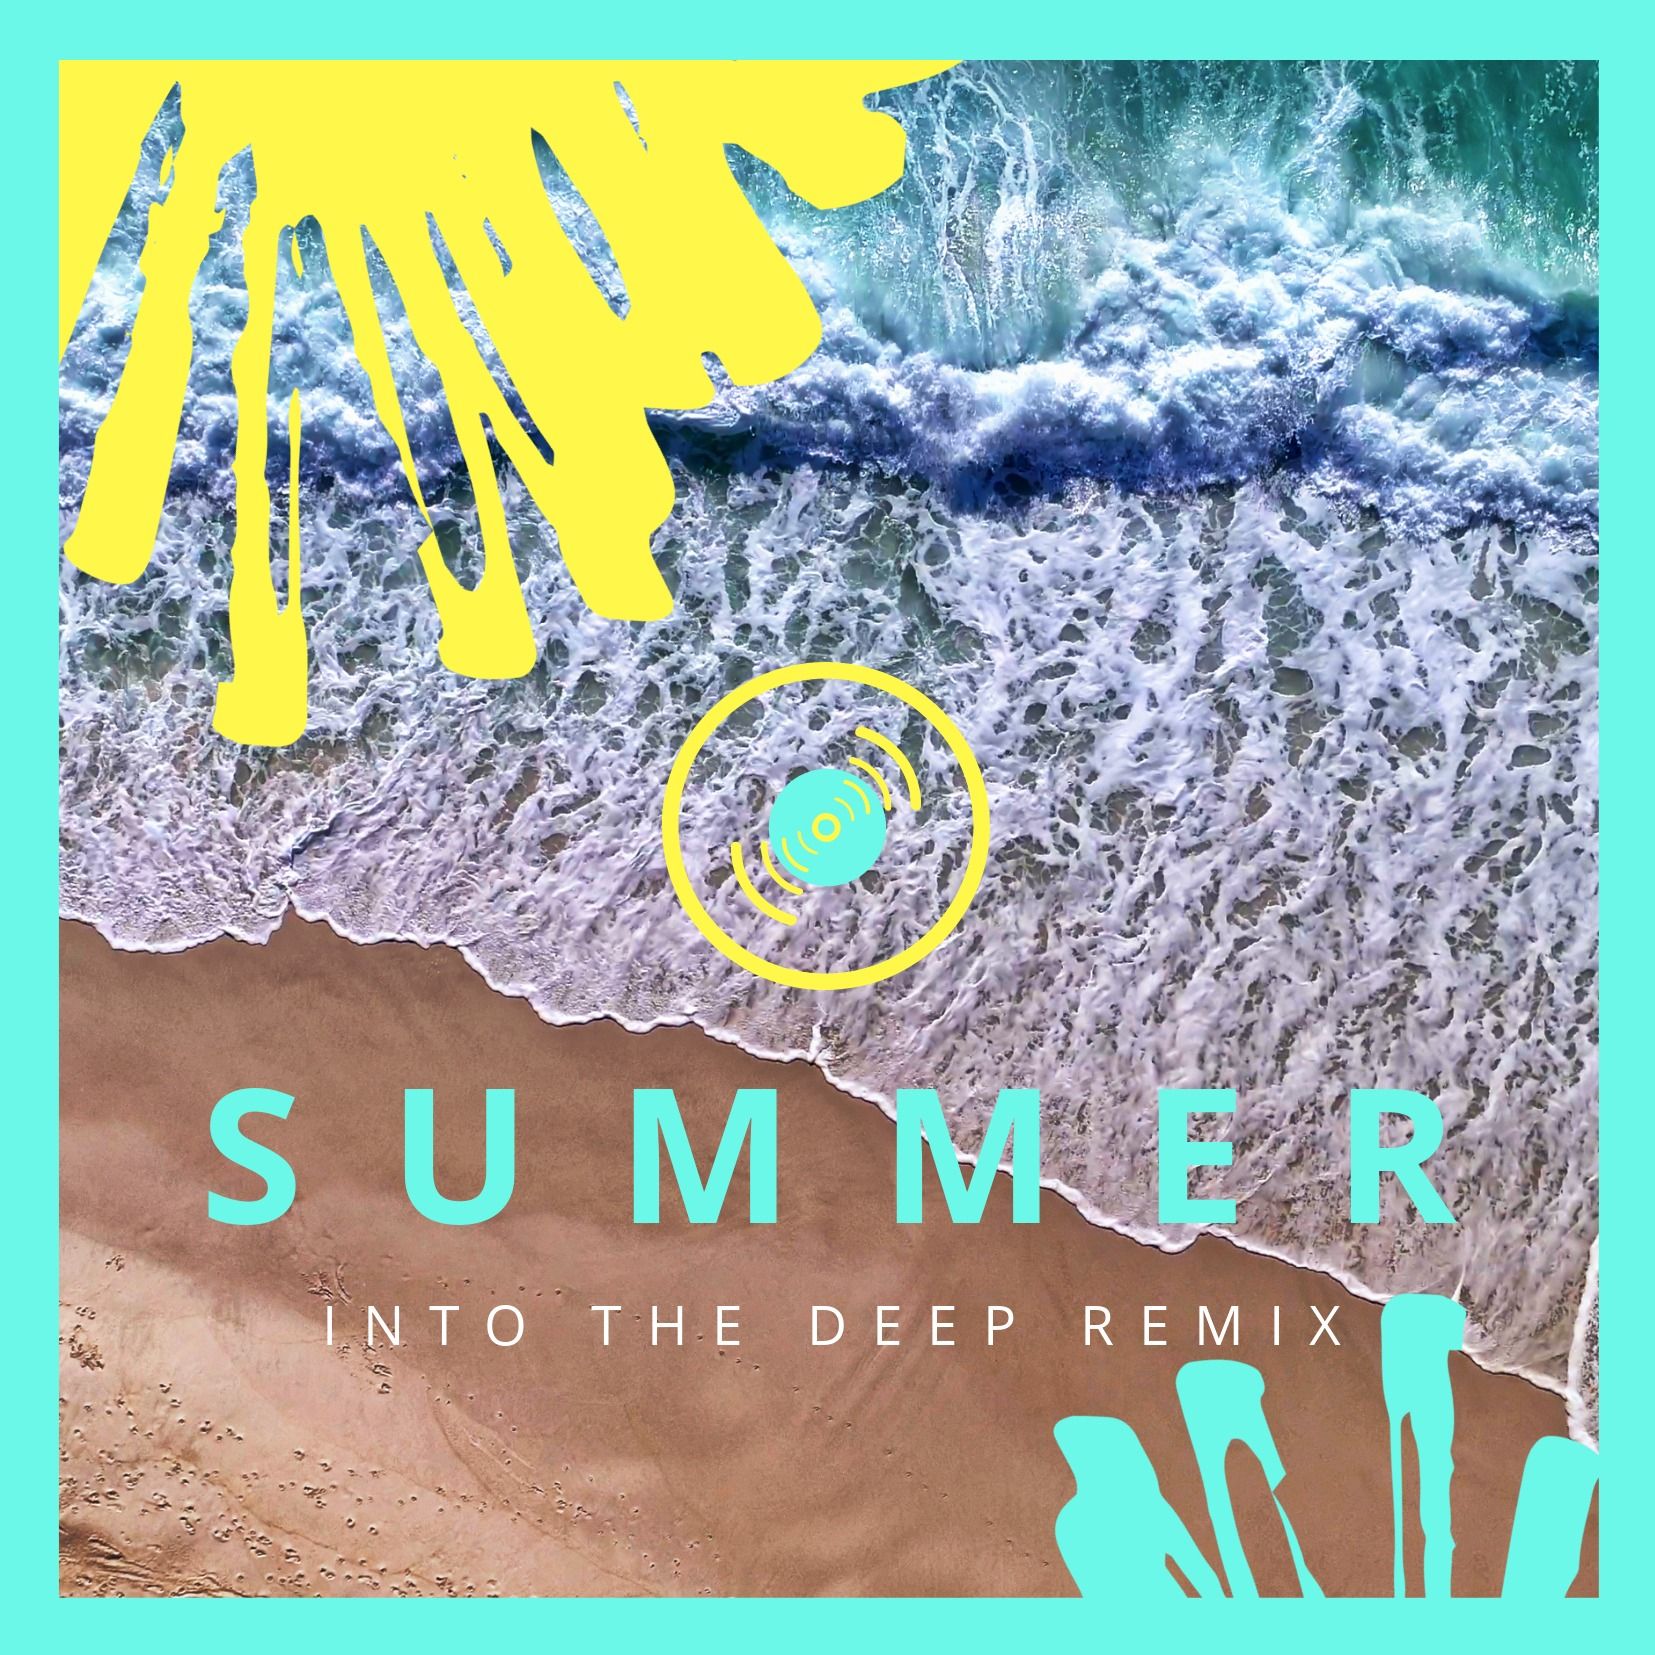 Sommerliches Farbdesign über einem Strand mit Wellen – Kräftige und leuchtende Farben im Albumcover-Design – Bild